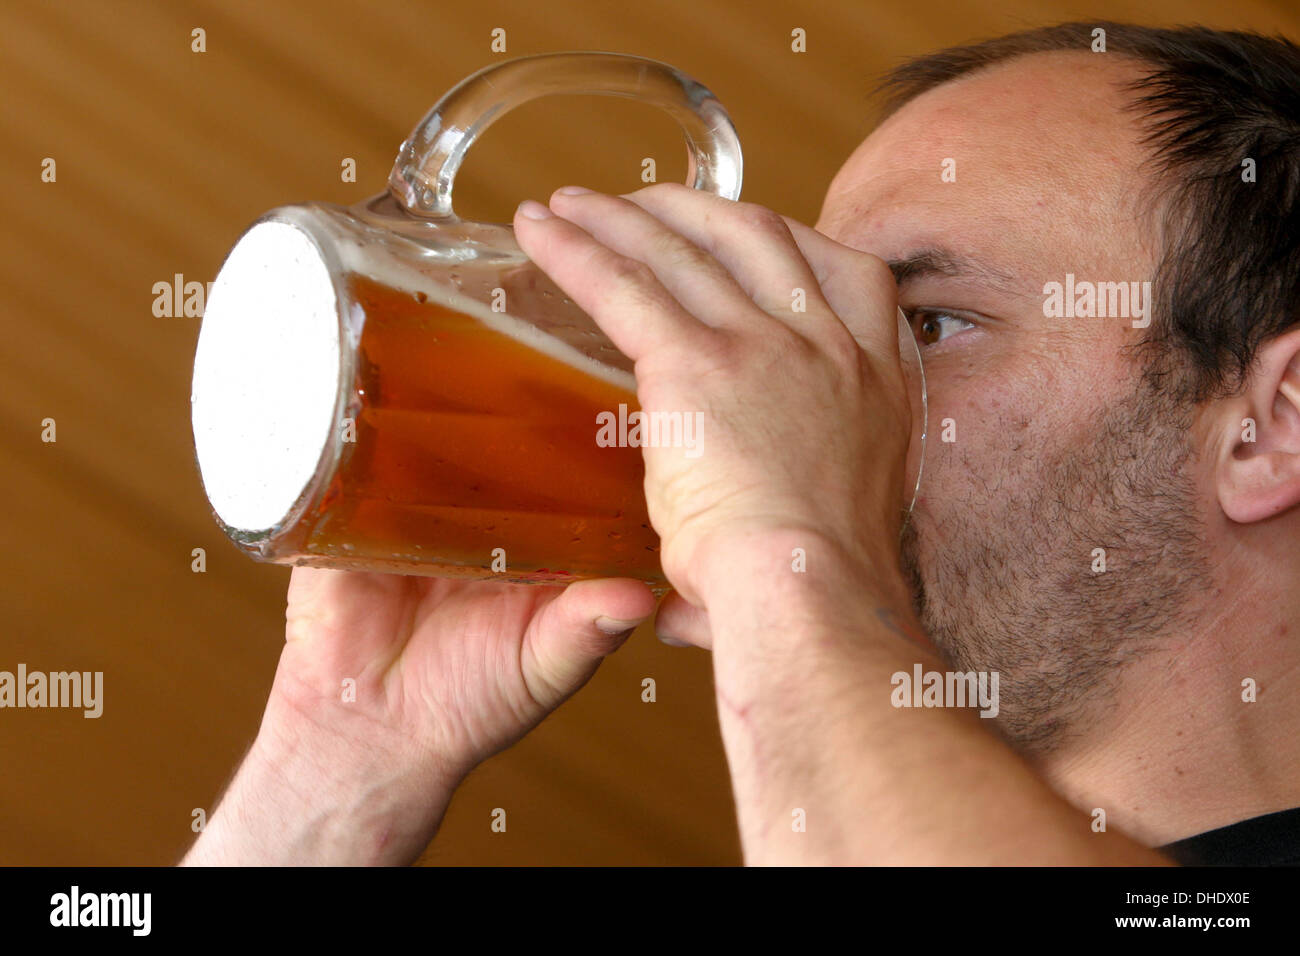 L'homme boit de la bière, la concurrence dans l'alcool, la vitesse, la fête de la bière en République Tchèque Banque D'Images